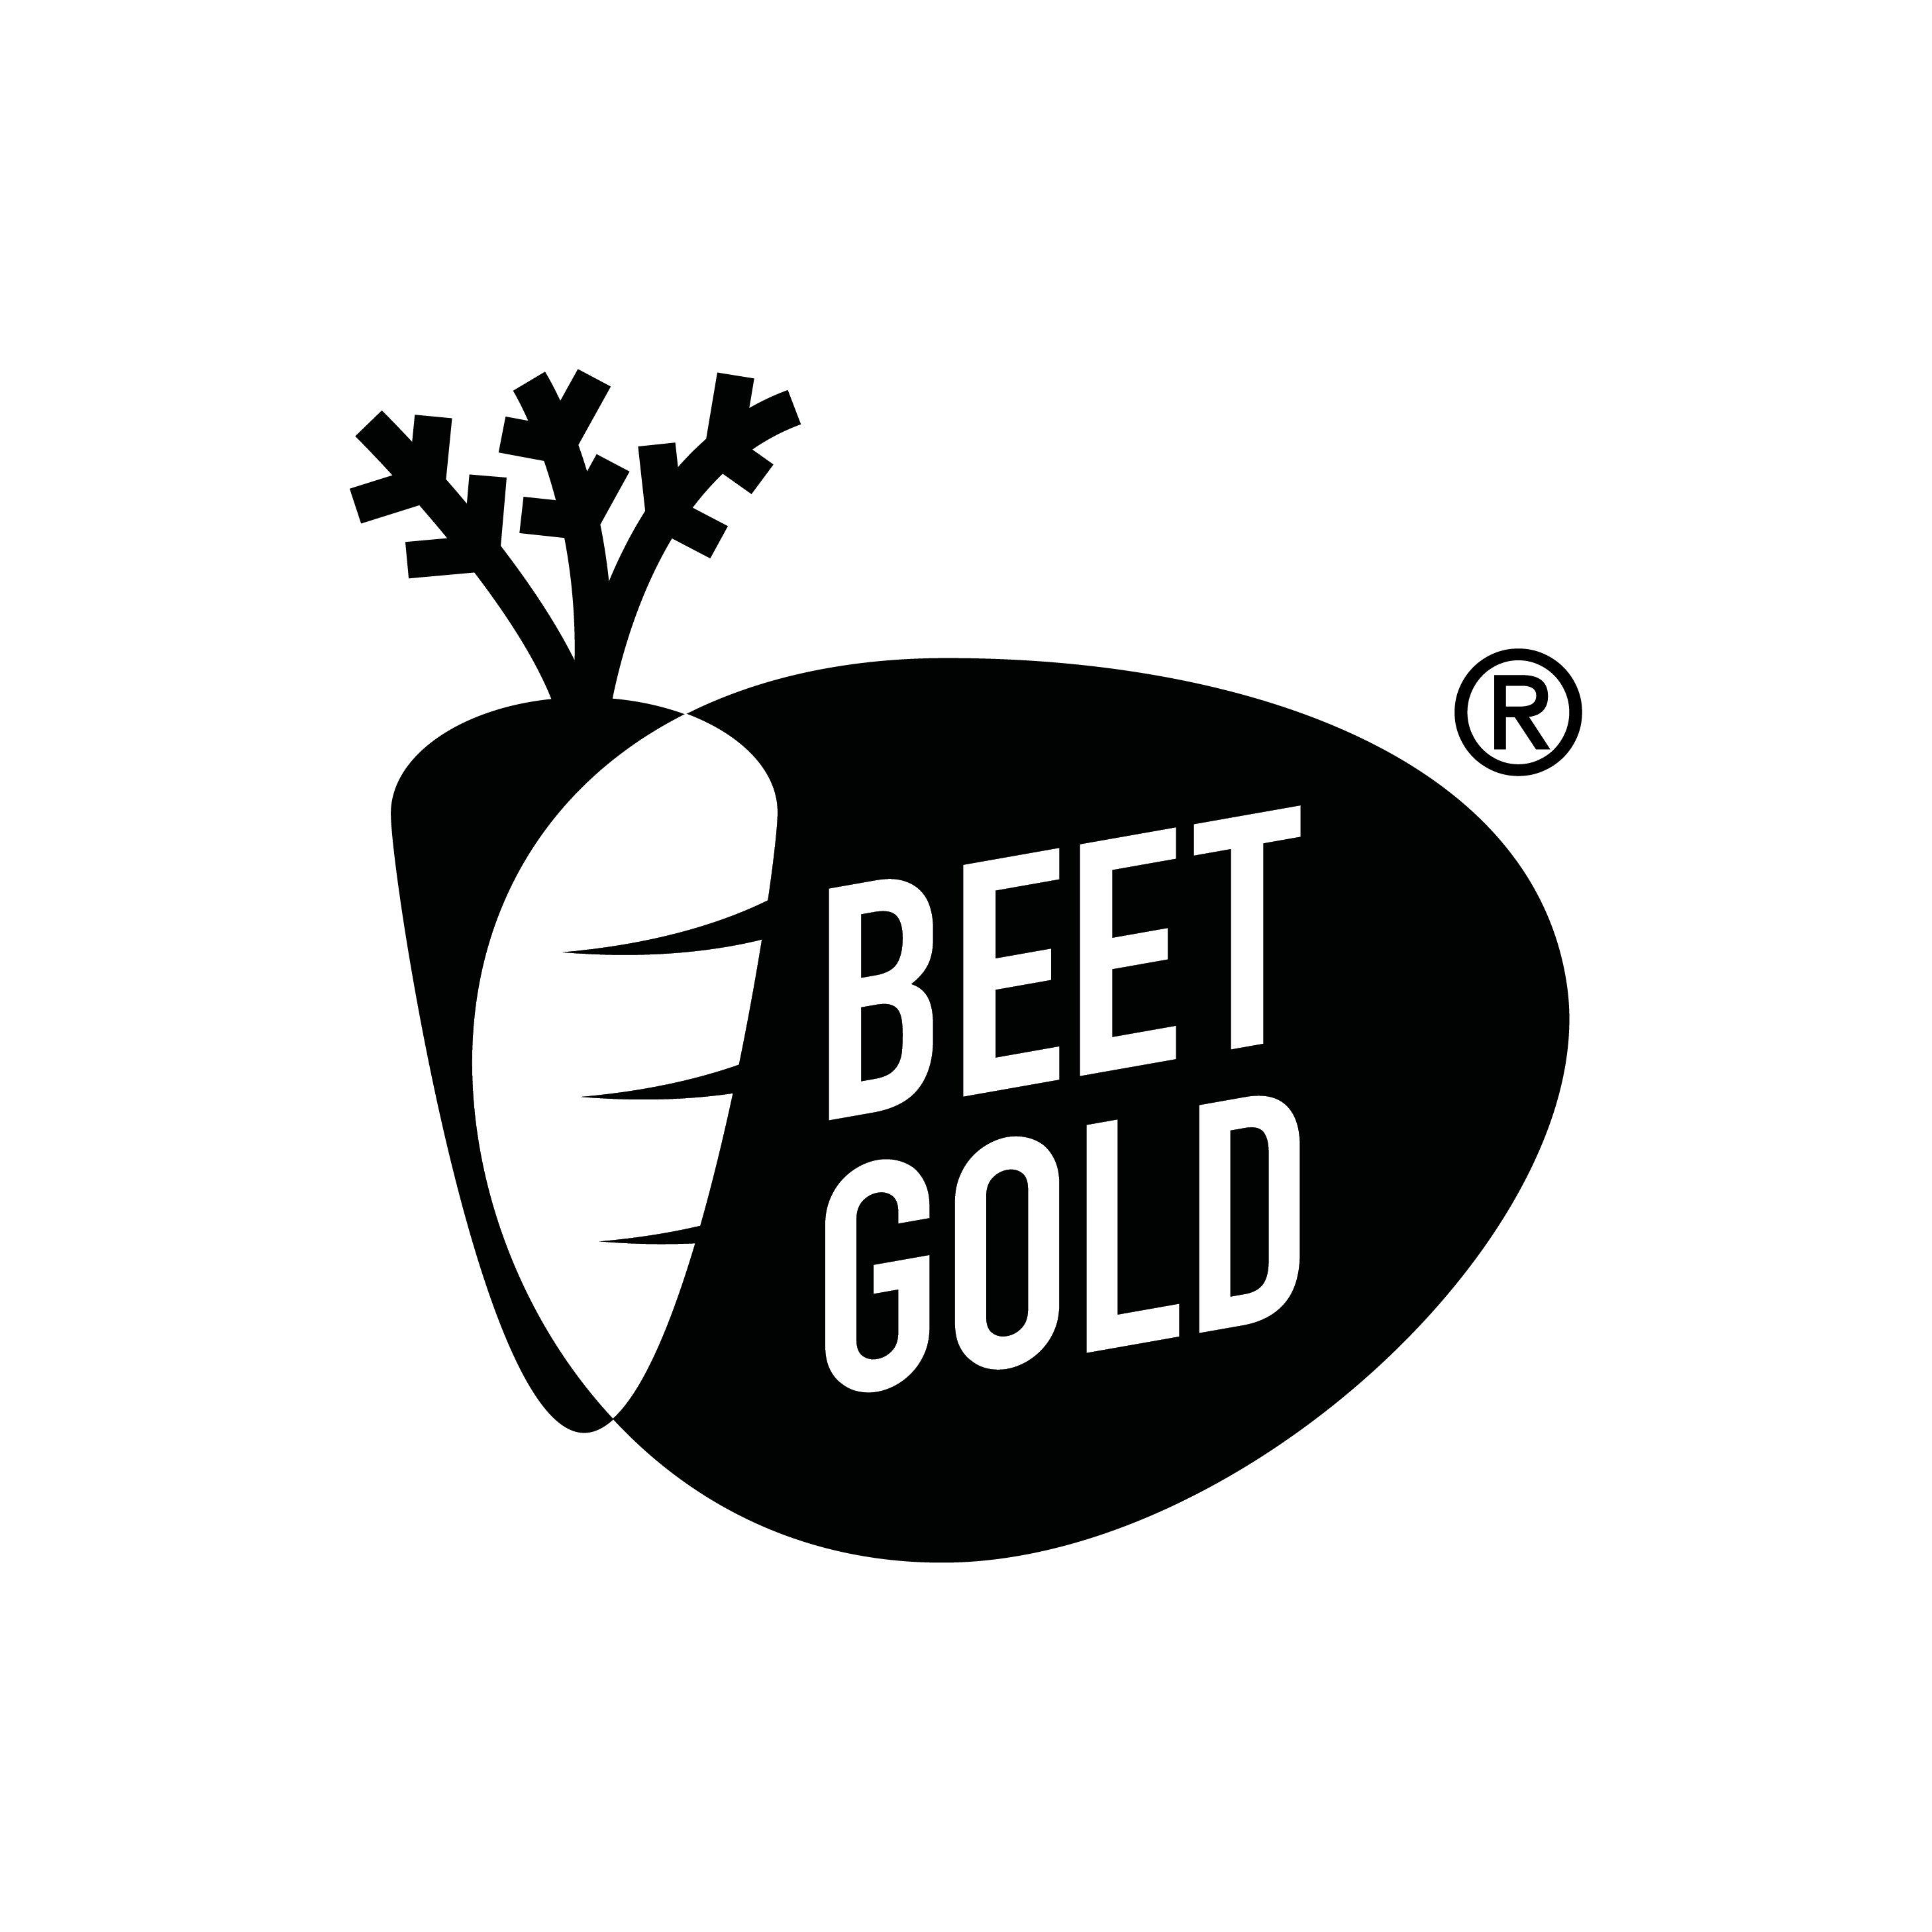 Beetgold_Kundenlogo202116